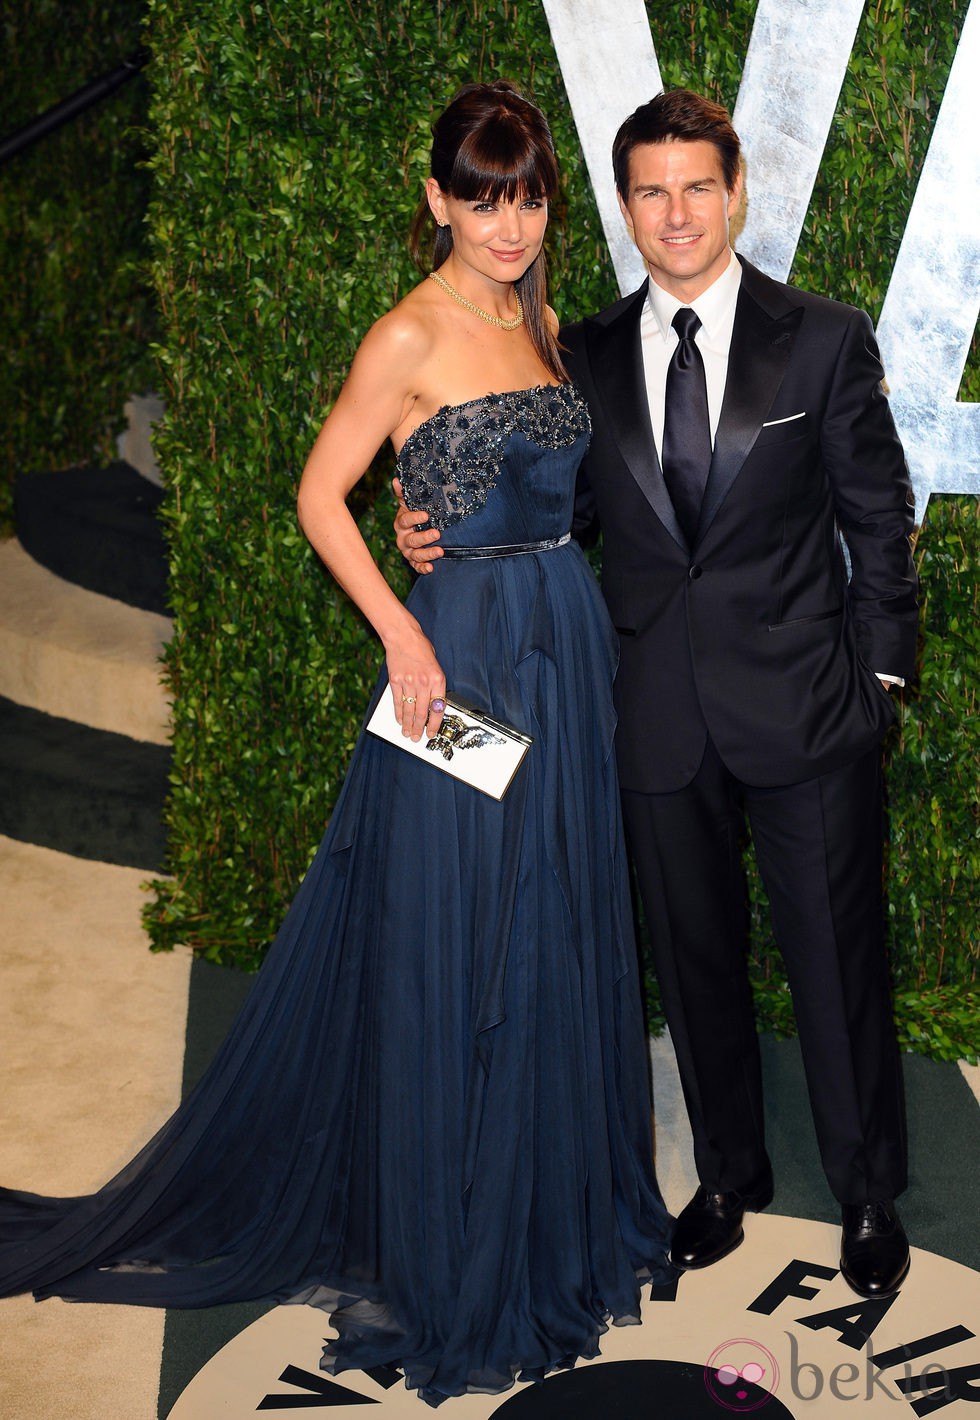 Tom Cruise y Katie Holmes en una fiesta celebrada tras los Oscar 2012